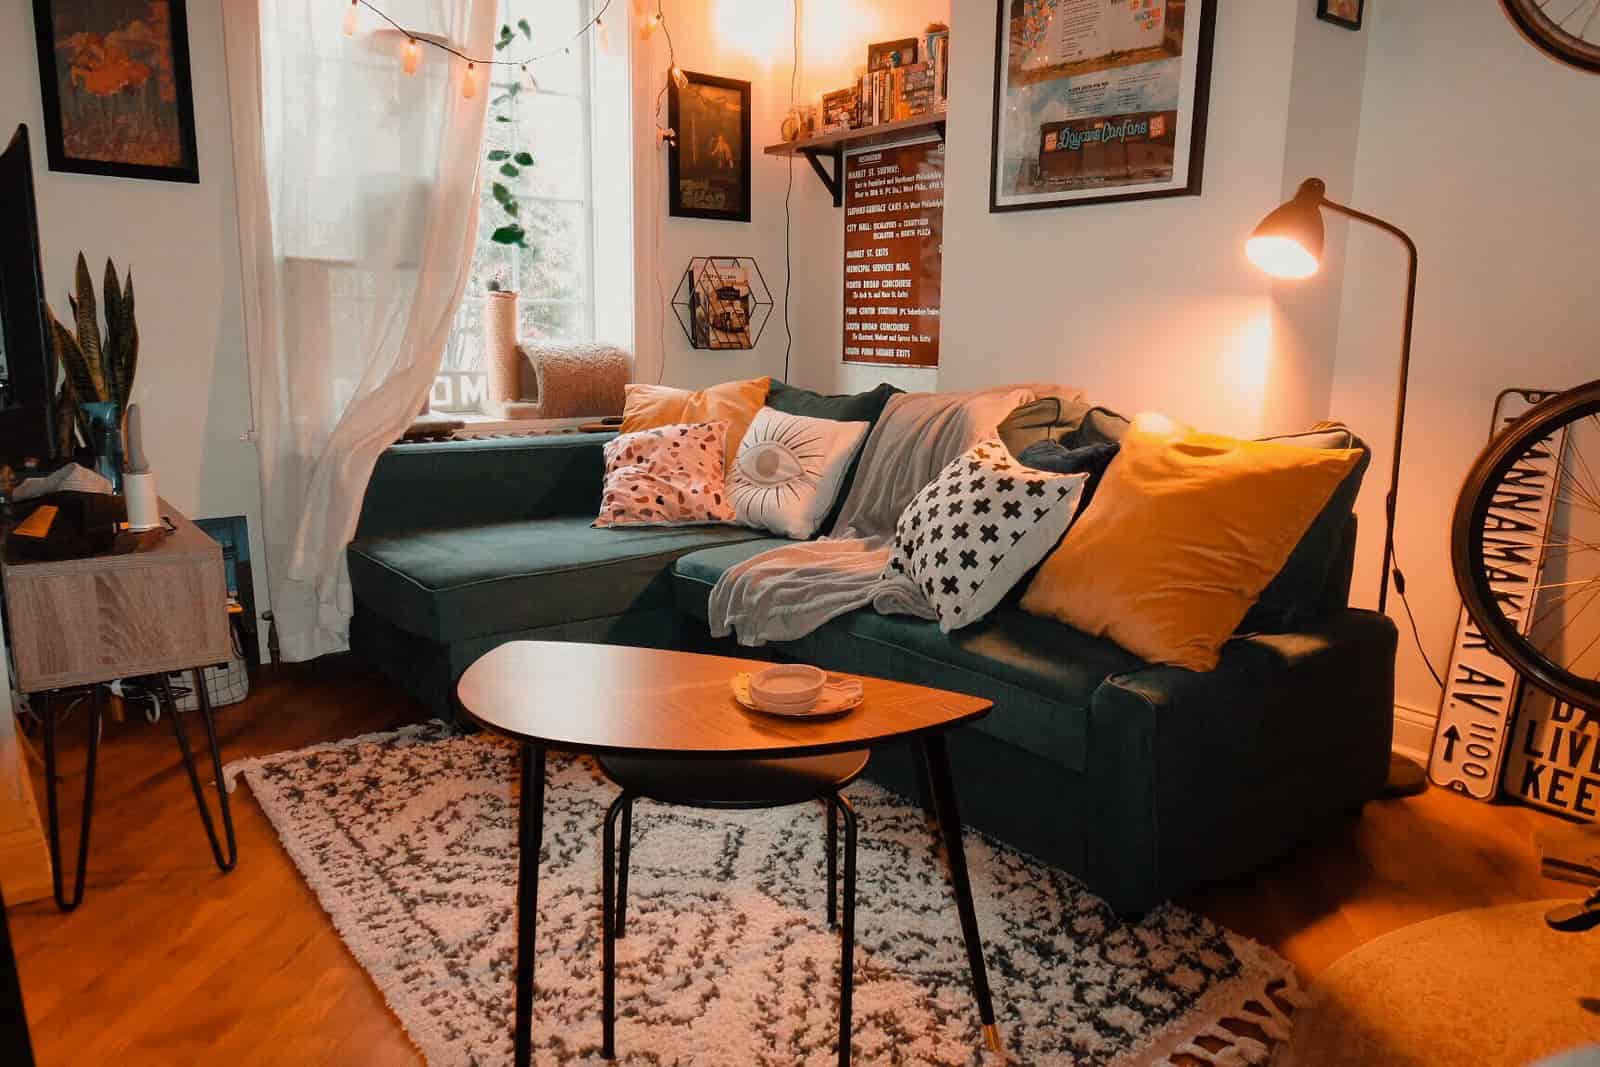 ikea living room ideas 2022